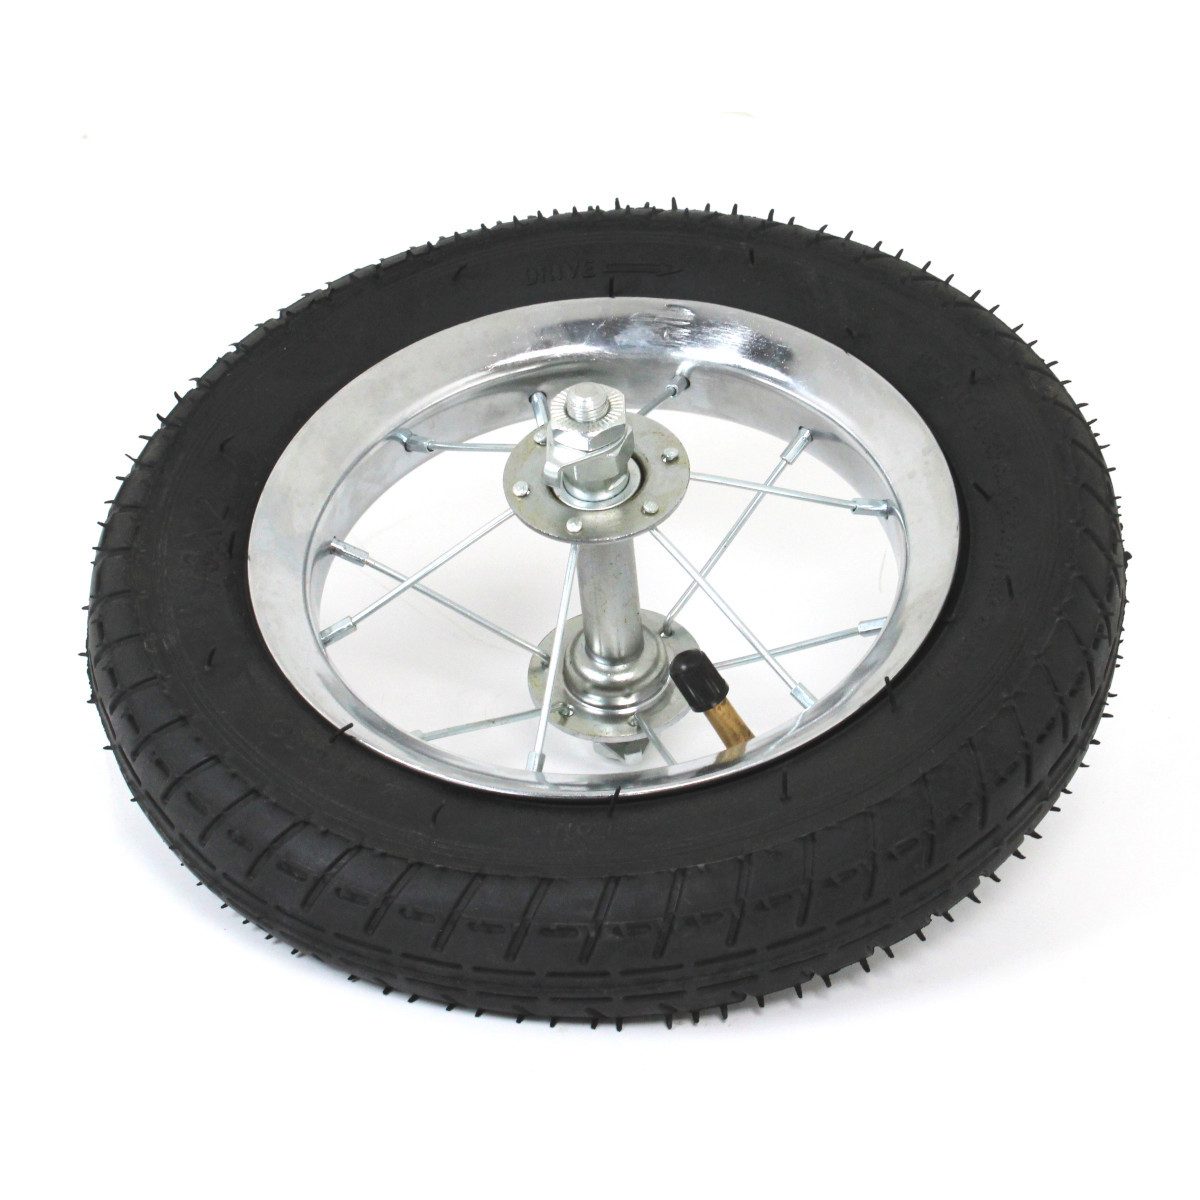 Anhänger-Stützrad Komplett-Laufrad 10 x 2 Vorderrad Speichen Felge Reifen Schlauch